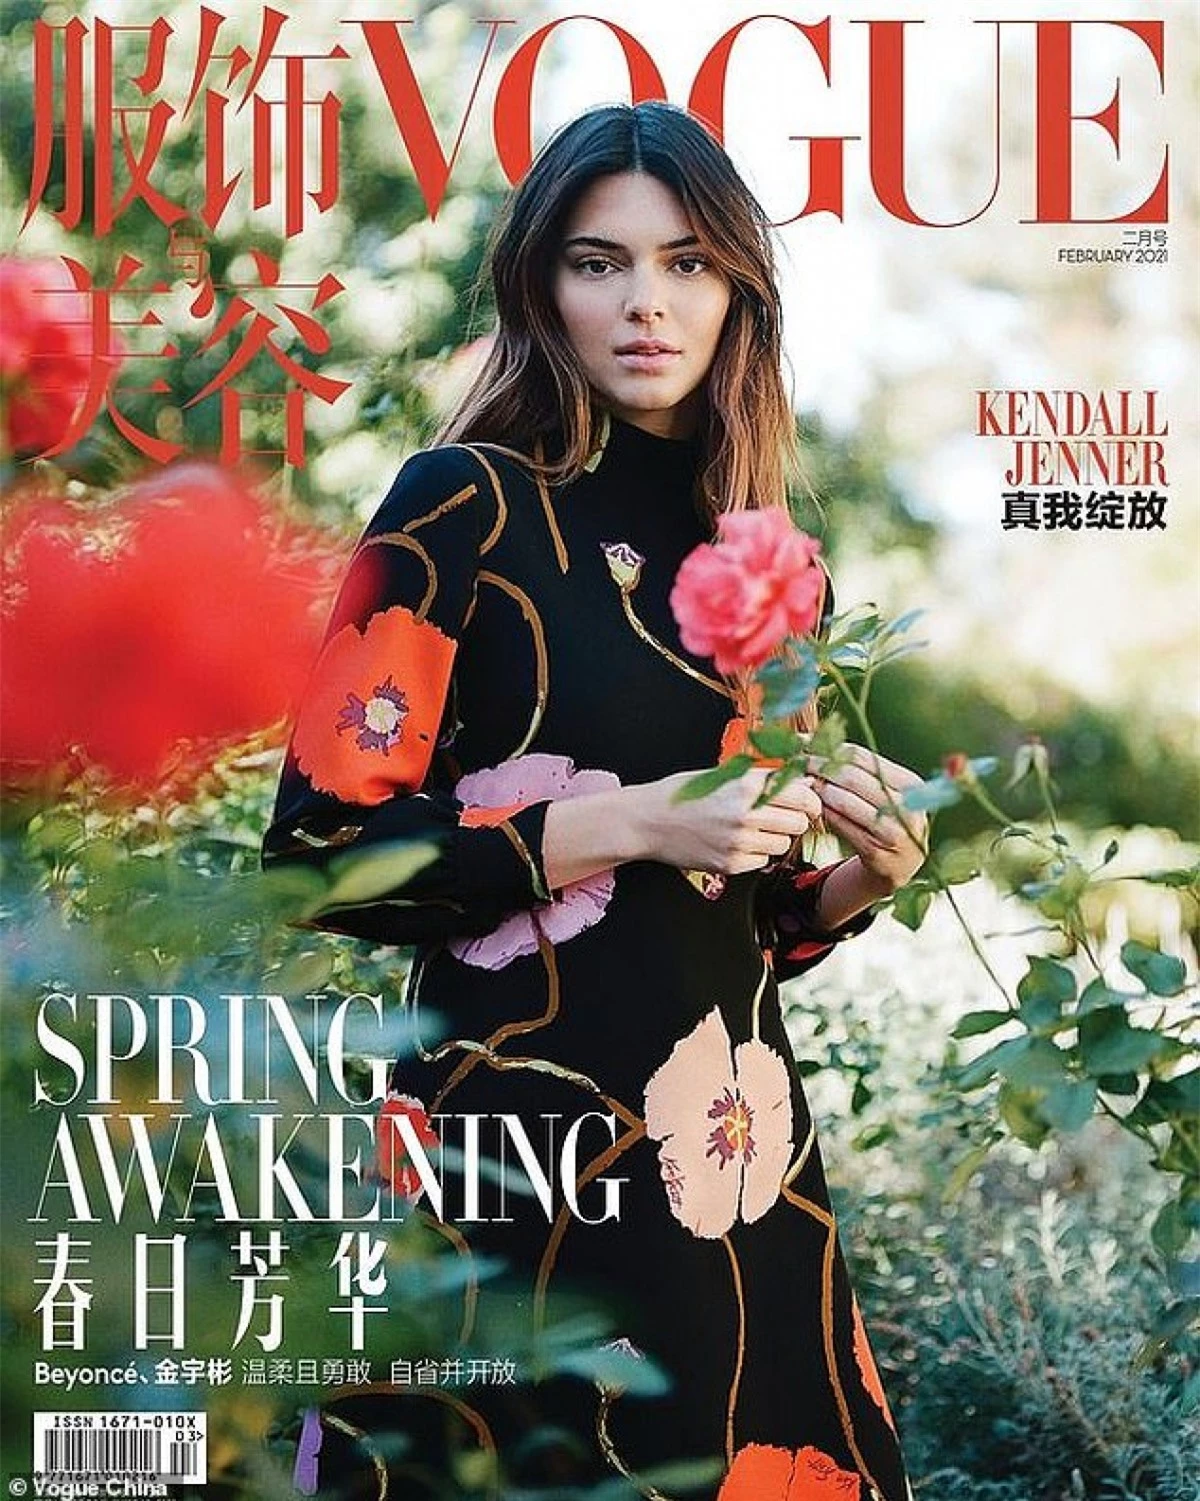 Kendall Jenner gây ấn tượng khi xuất hiện trên trang bìa tạp chí Vogue Trung Quốc số mới nhất.